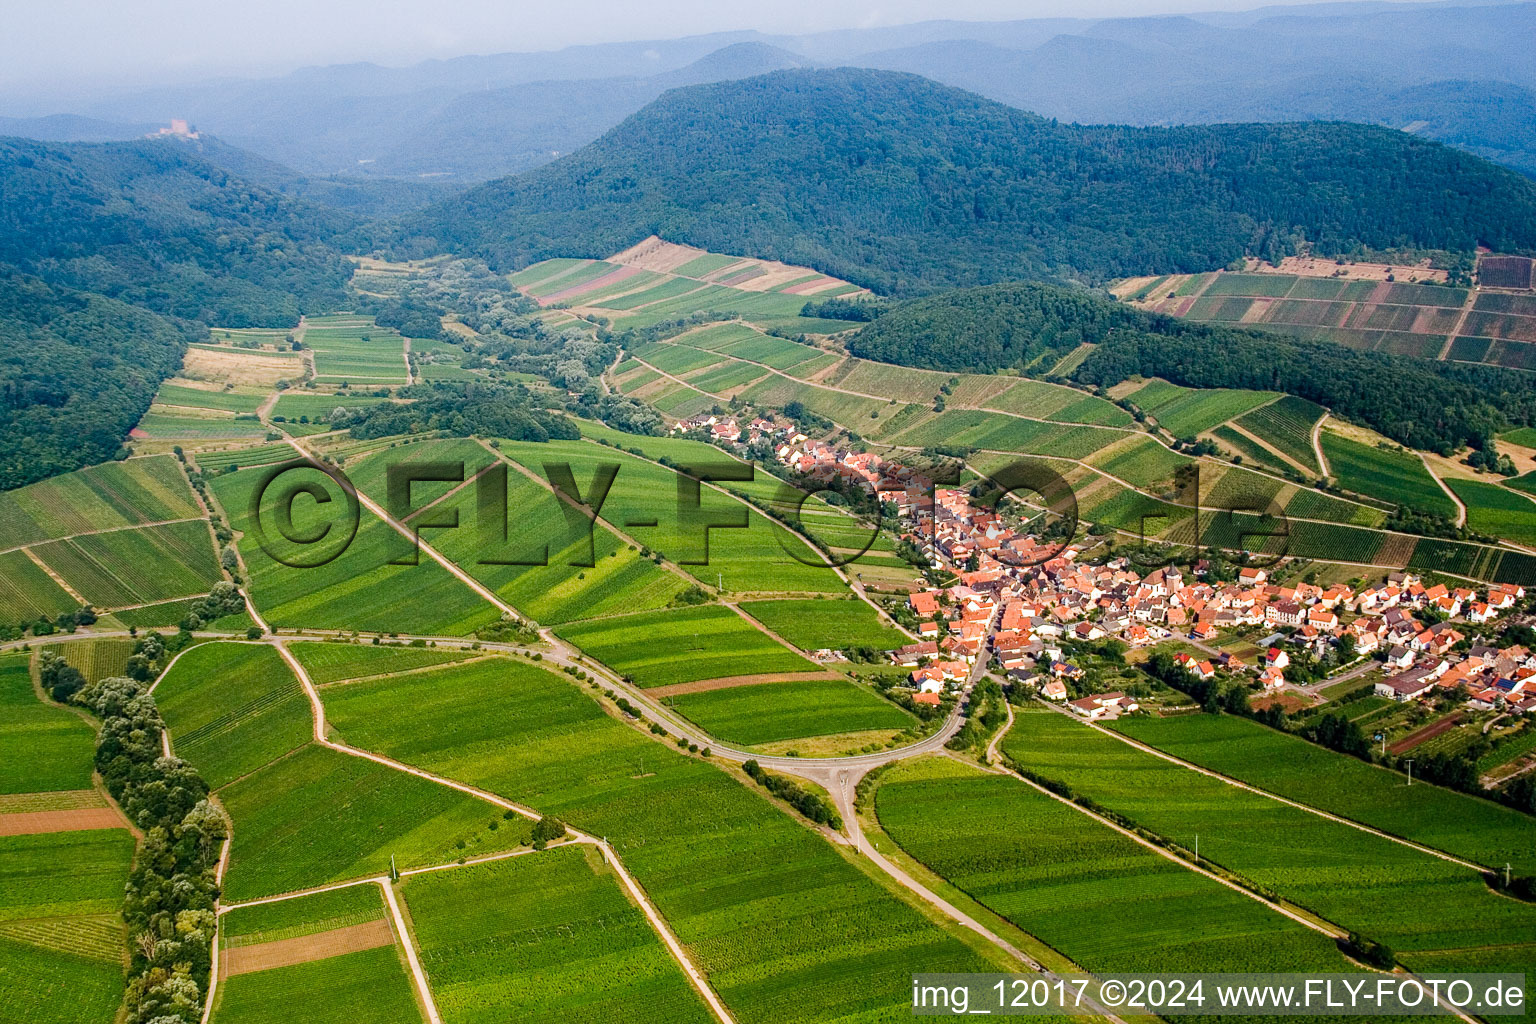 Vue aérienne de Paysage viticole des régions viticoles du Palatinat à Ranschbach dans le département Rhénanie-Palatinat, Allemagne